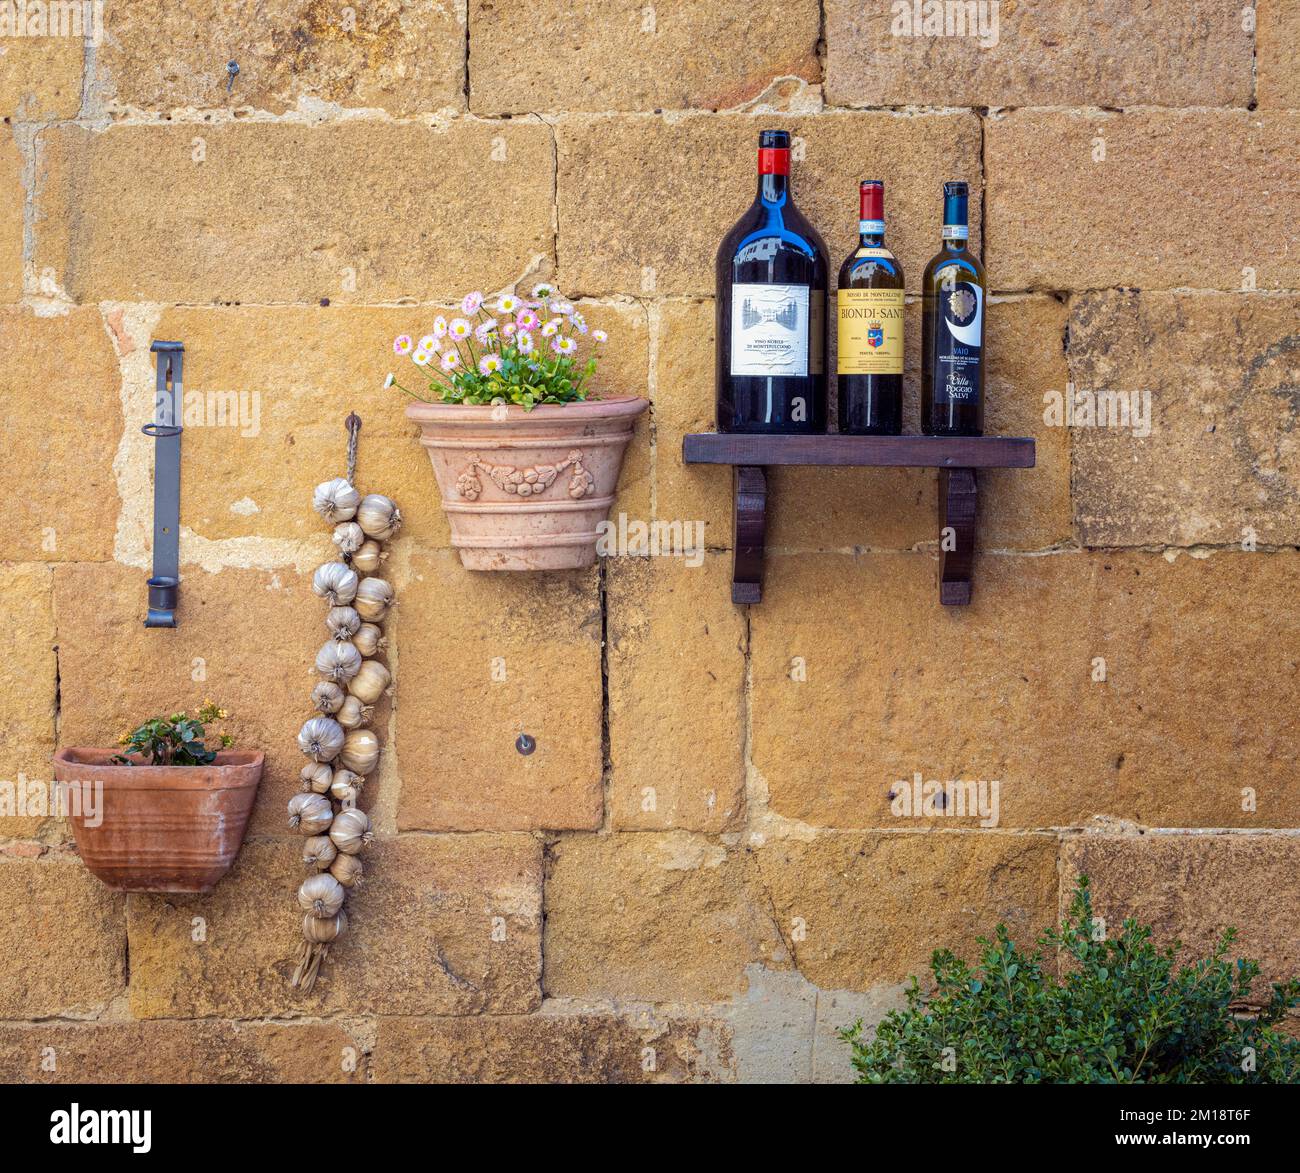 Pienza, provincia de Siena, Toscana, Italia. Ajo, flores y botella de vino vacía fuera del restaurante. Foto de stock